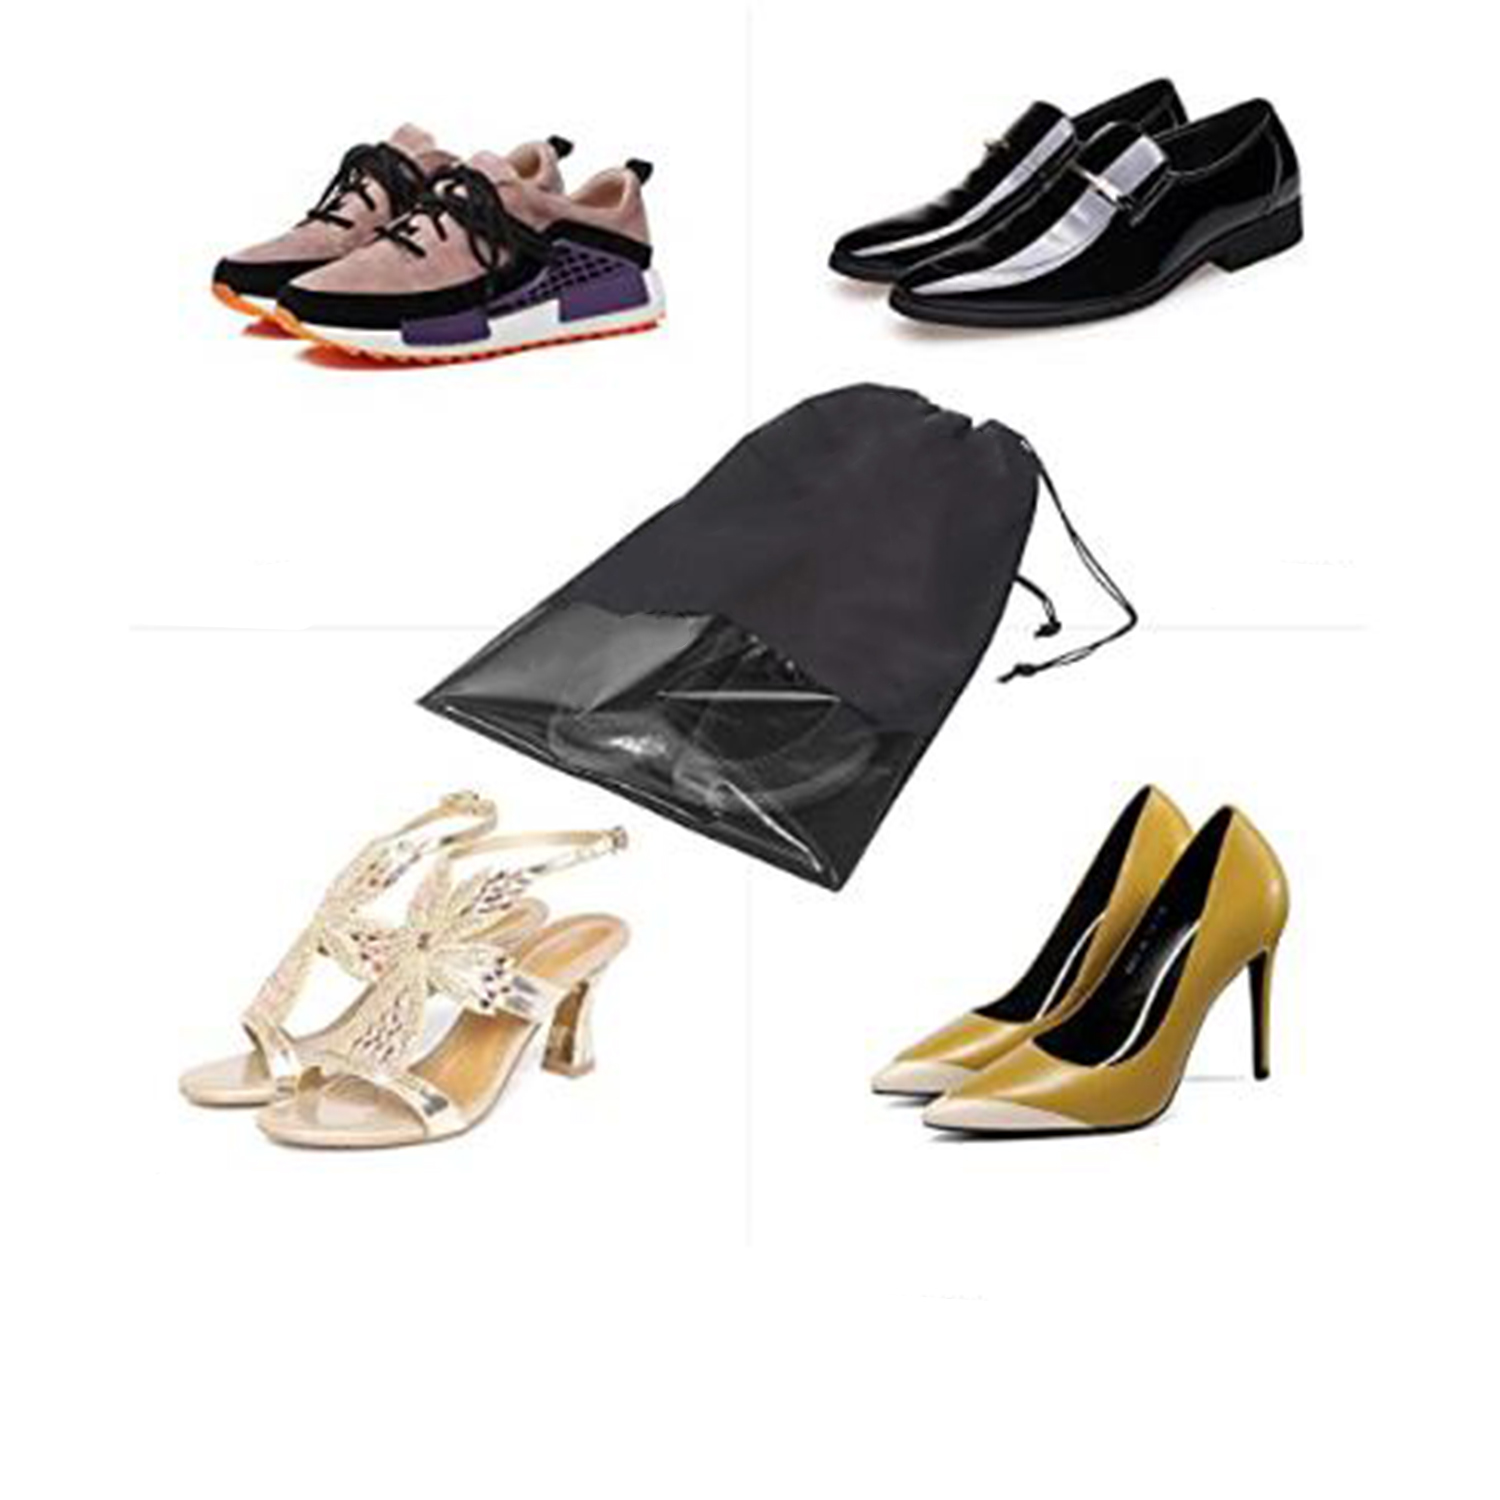 Мешок для обуви Homsu и вещей большой Premium Black - фото 6